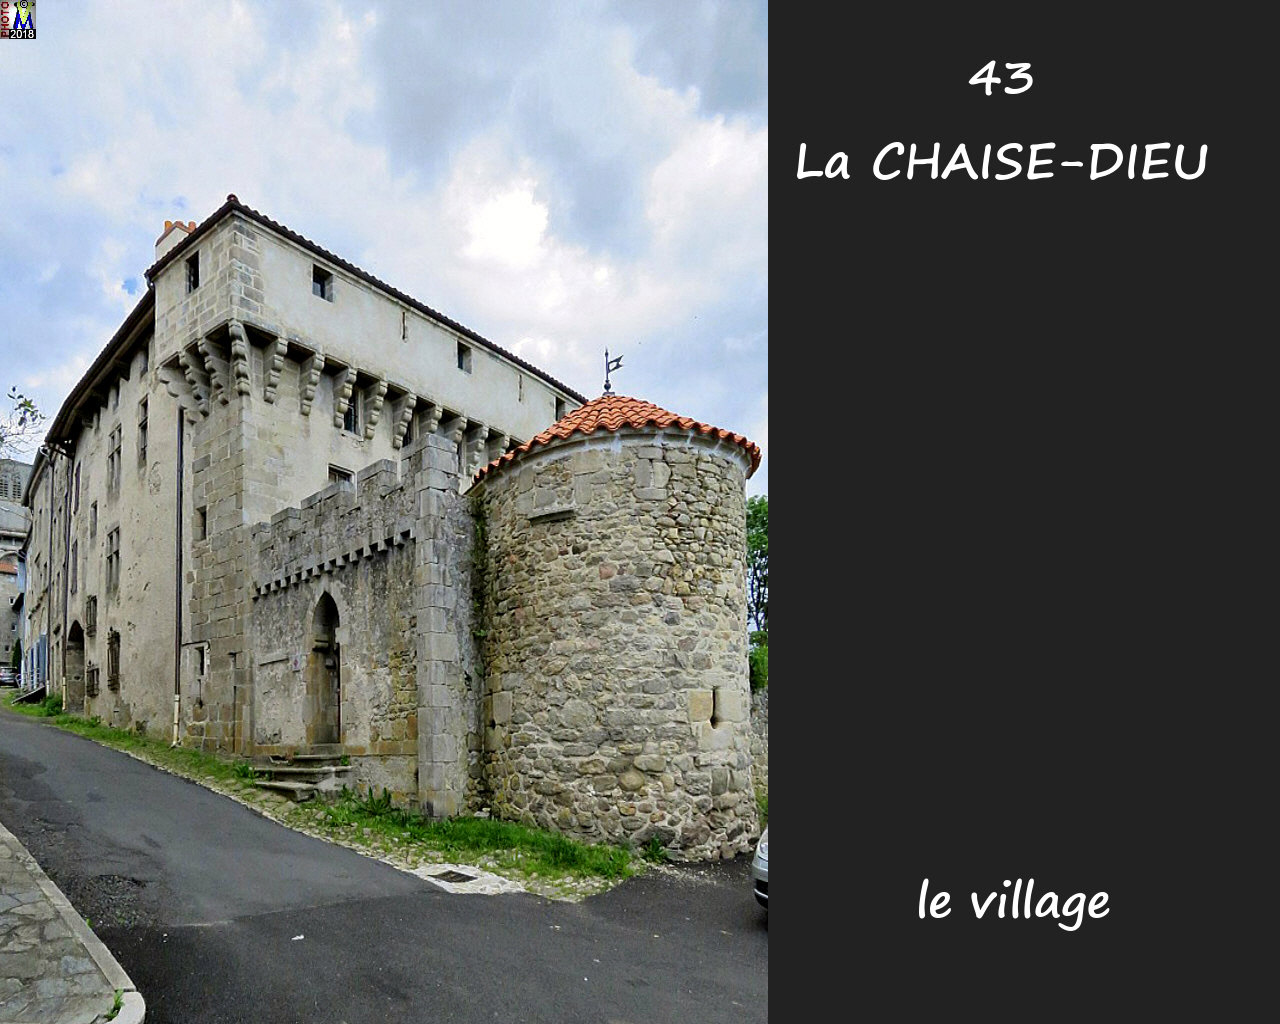 43CHAISE-DIEU_village_132.jpg